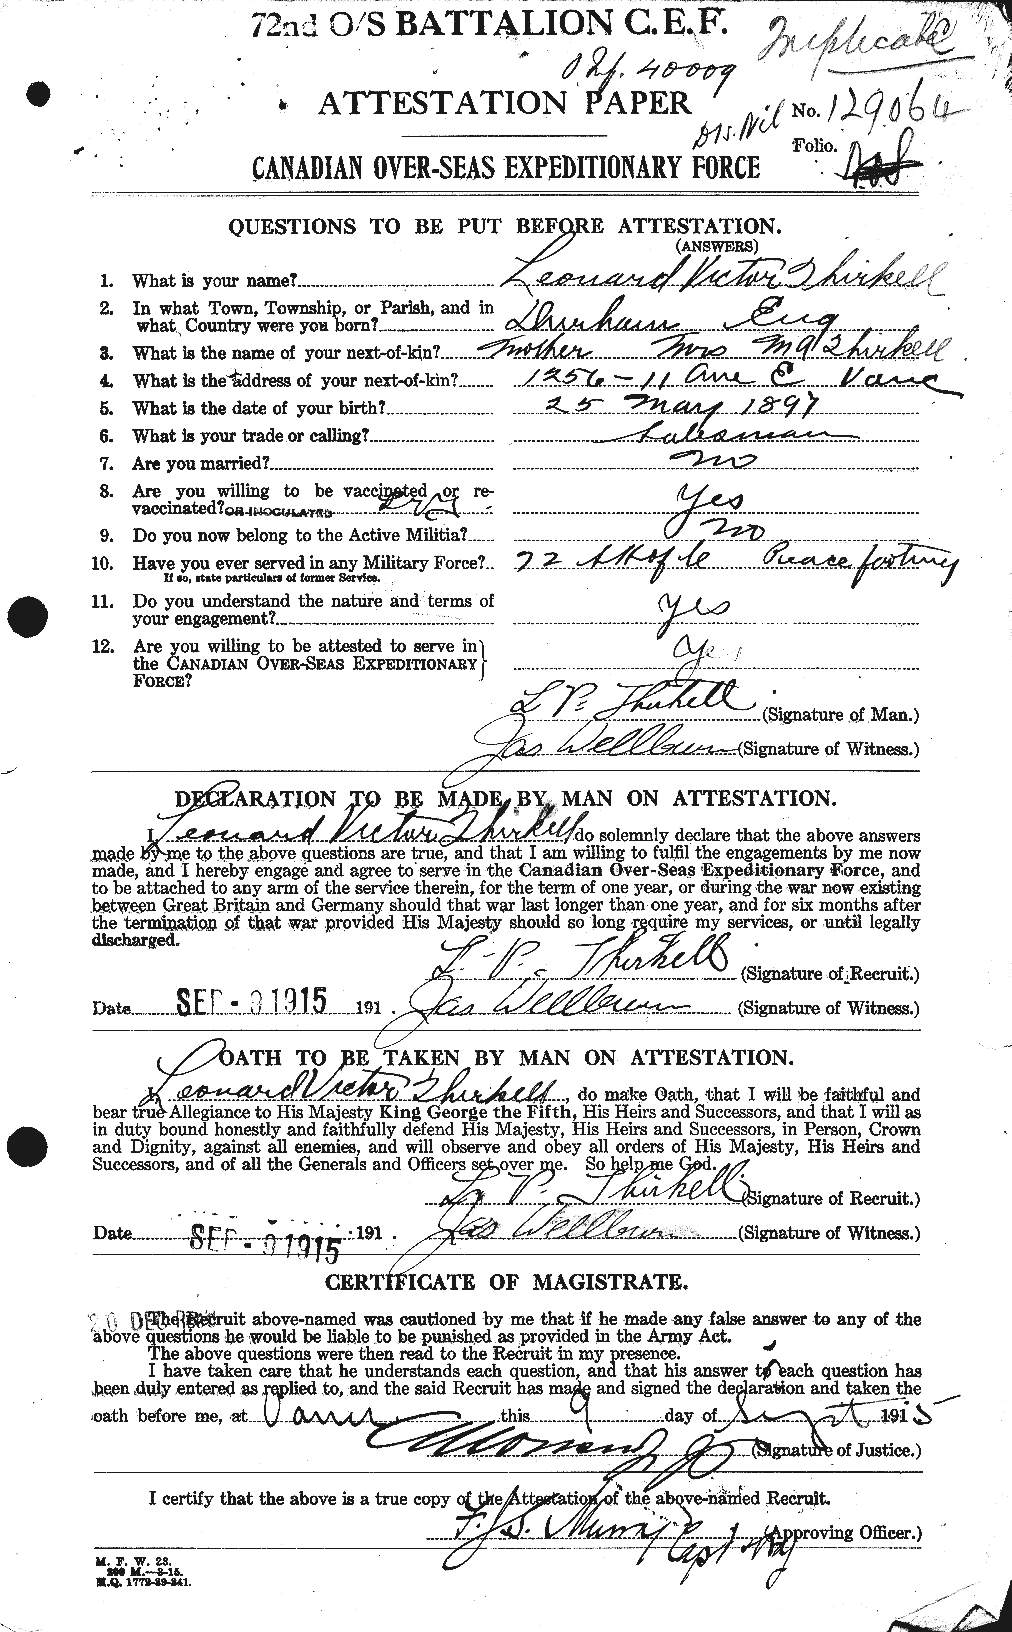 Dossiers du Personnel de la Première Guerre mondiale - CEC 632055a